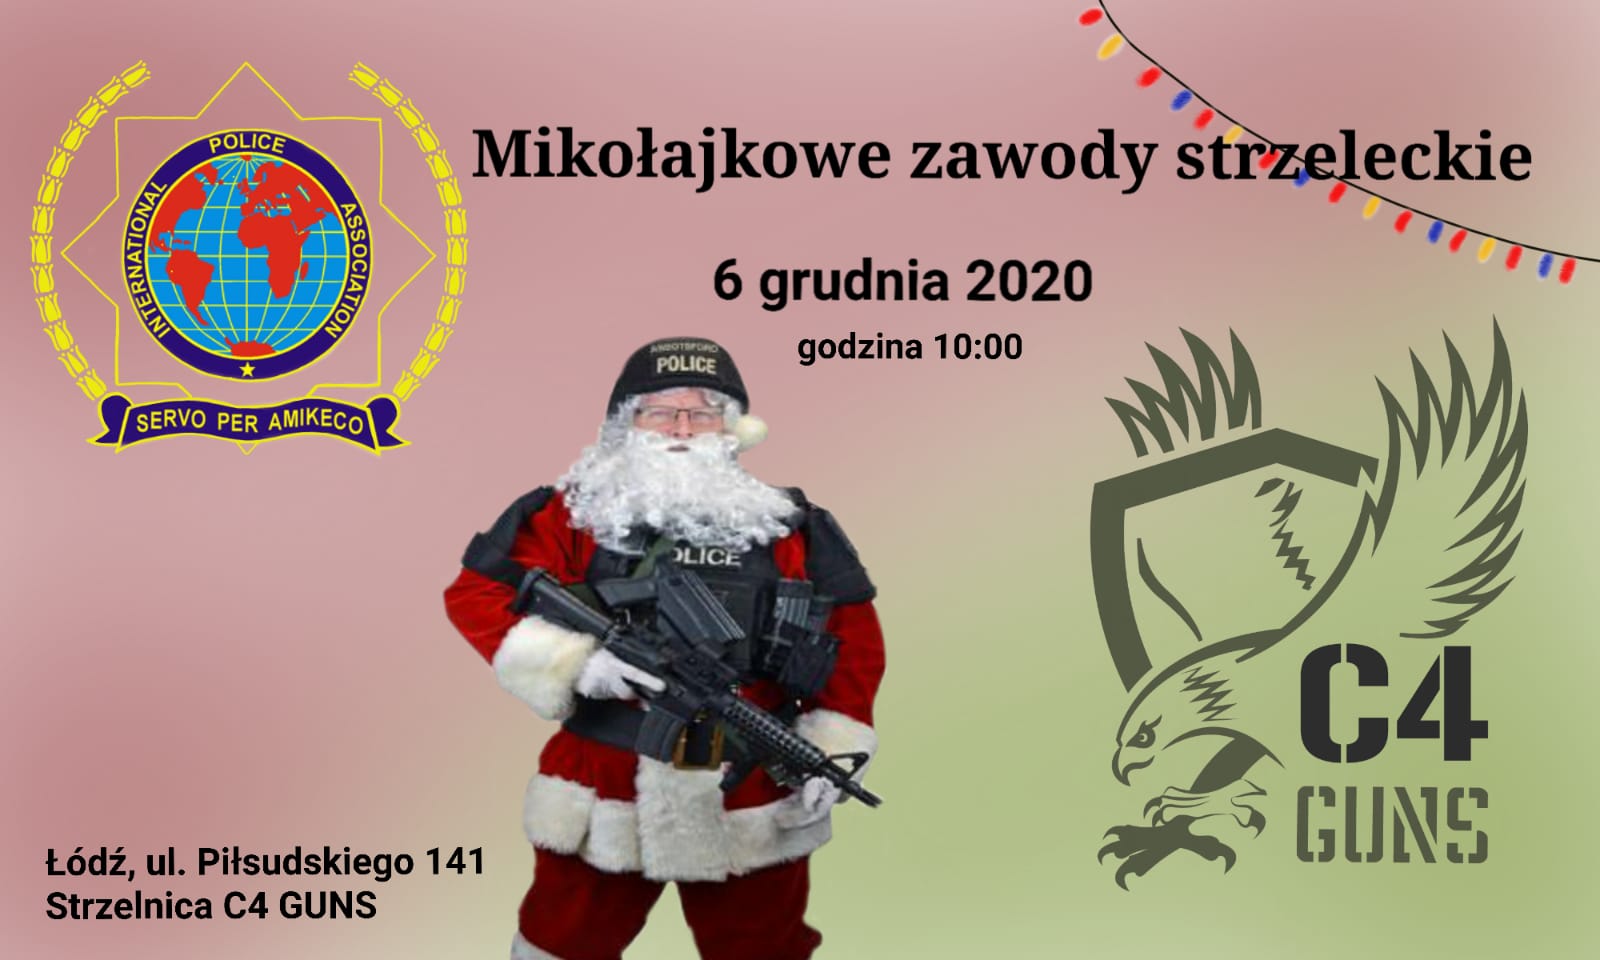 Mikołajkowe zawody strzeleckie IPA i C4 GUNS 06/12/2020 START 10:00